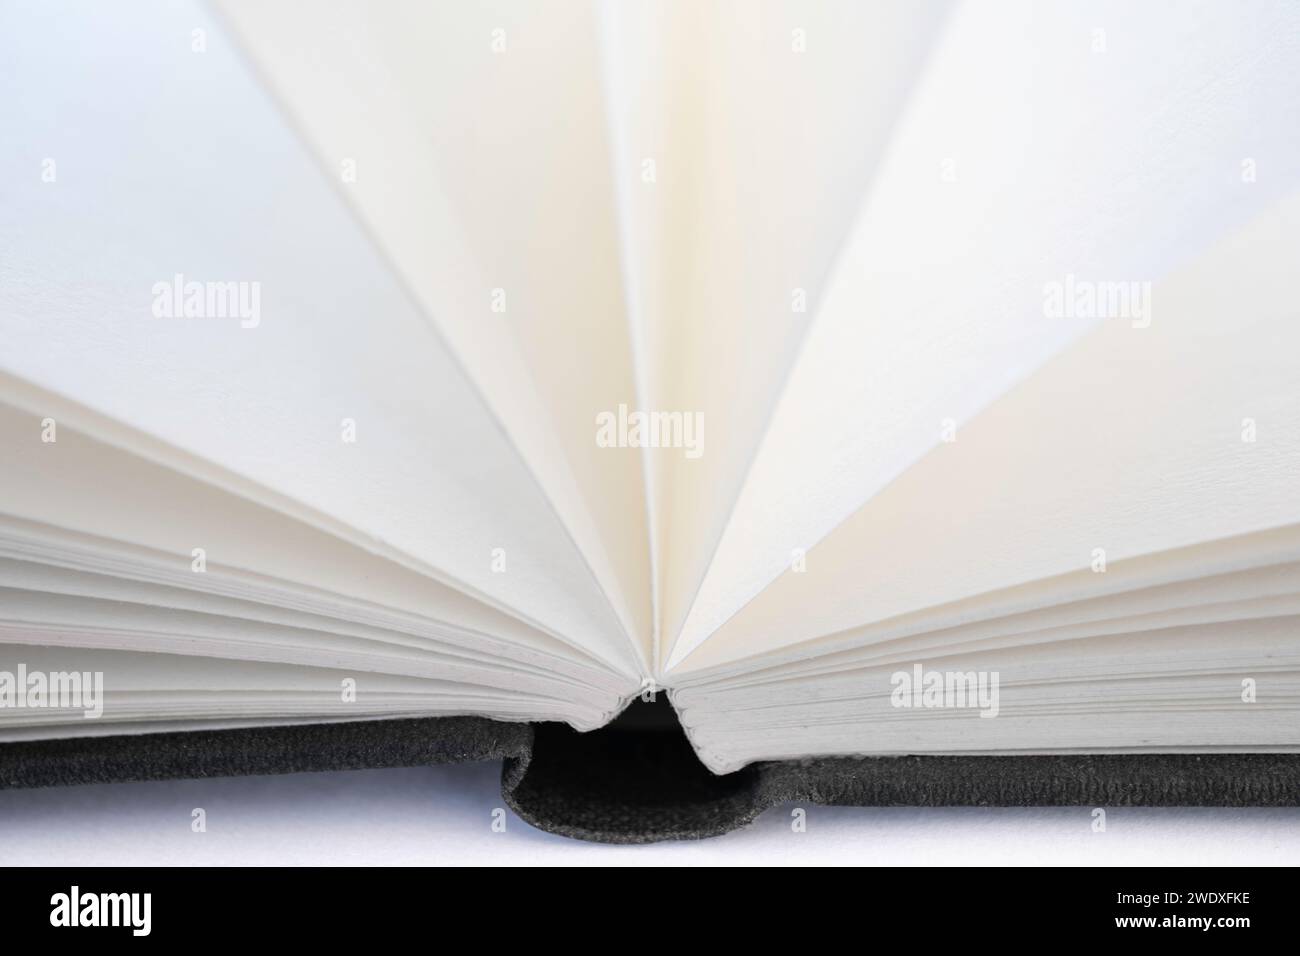 Libro aperto con pagine aperte bianche e una copertina in lino nero, isolata su sfondo bianco Foto Stock